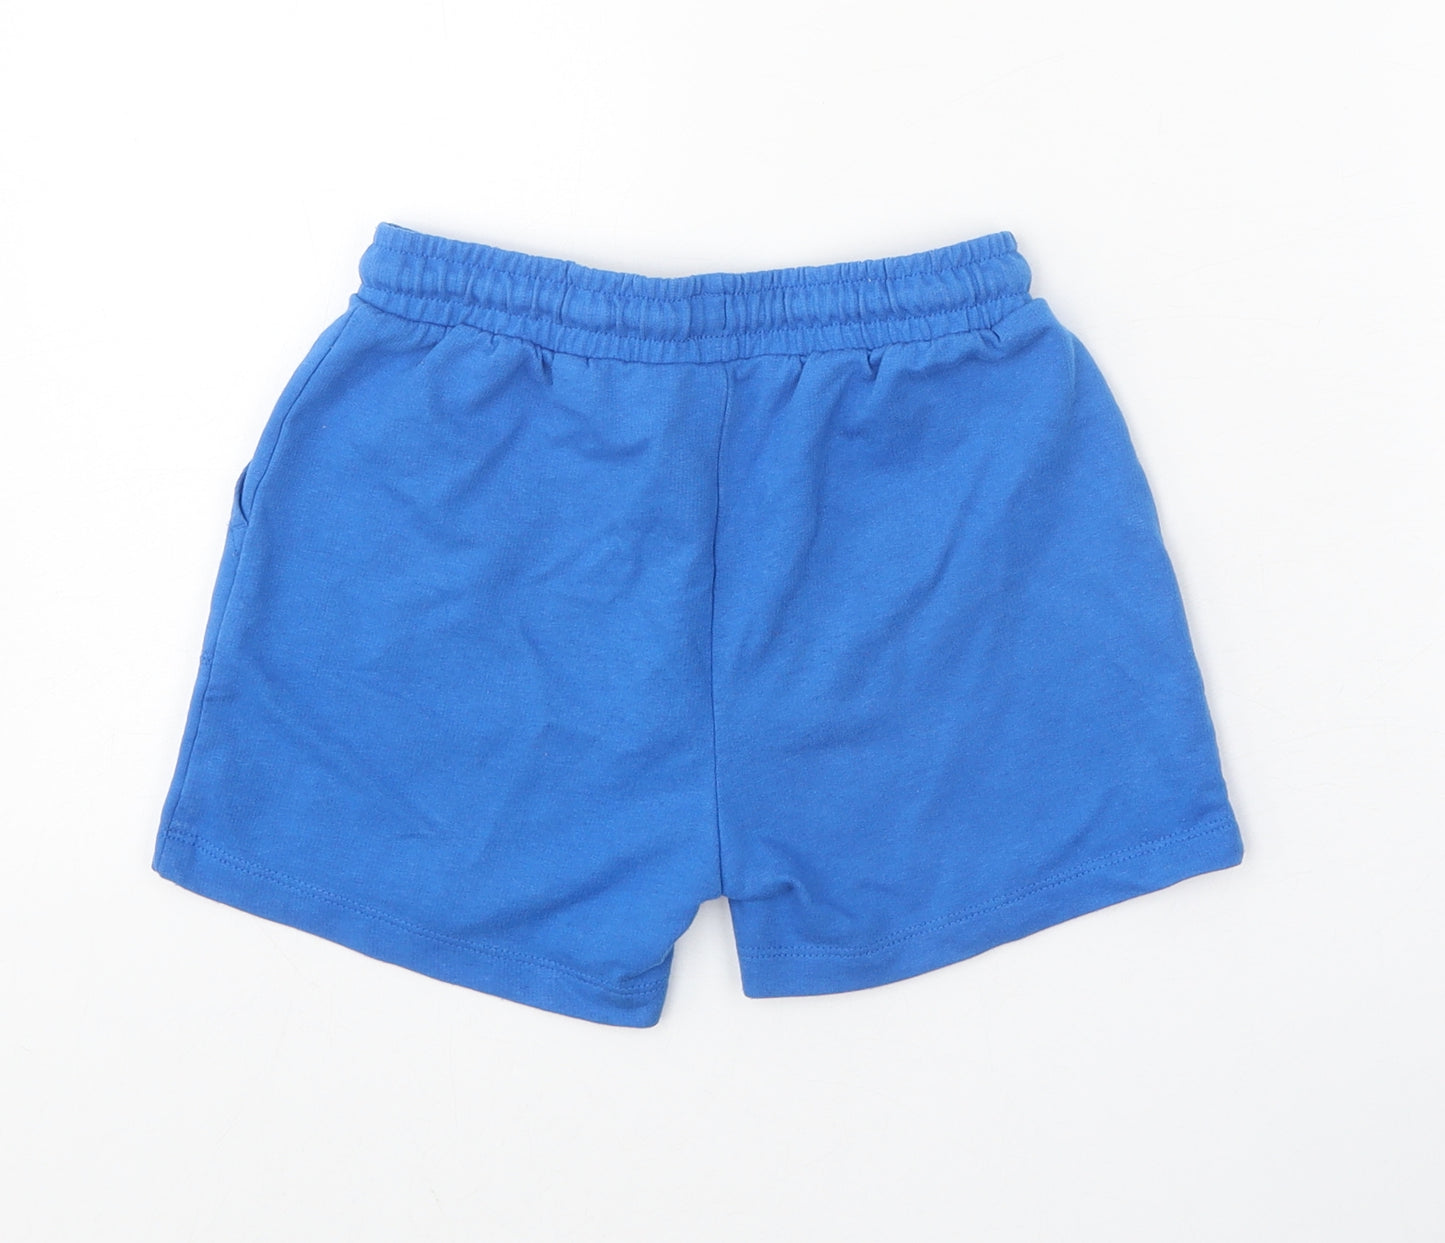 Matalan Boys Blue Cotton Sweat Shorts Size 5-6 Years Regular Drawstring